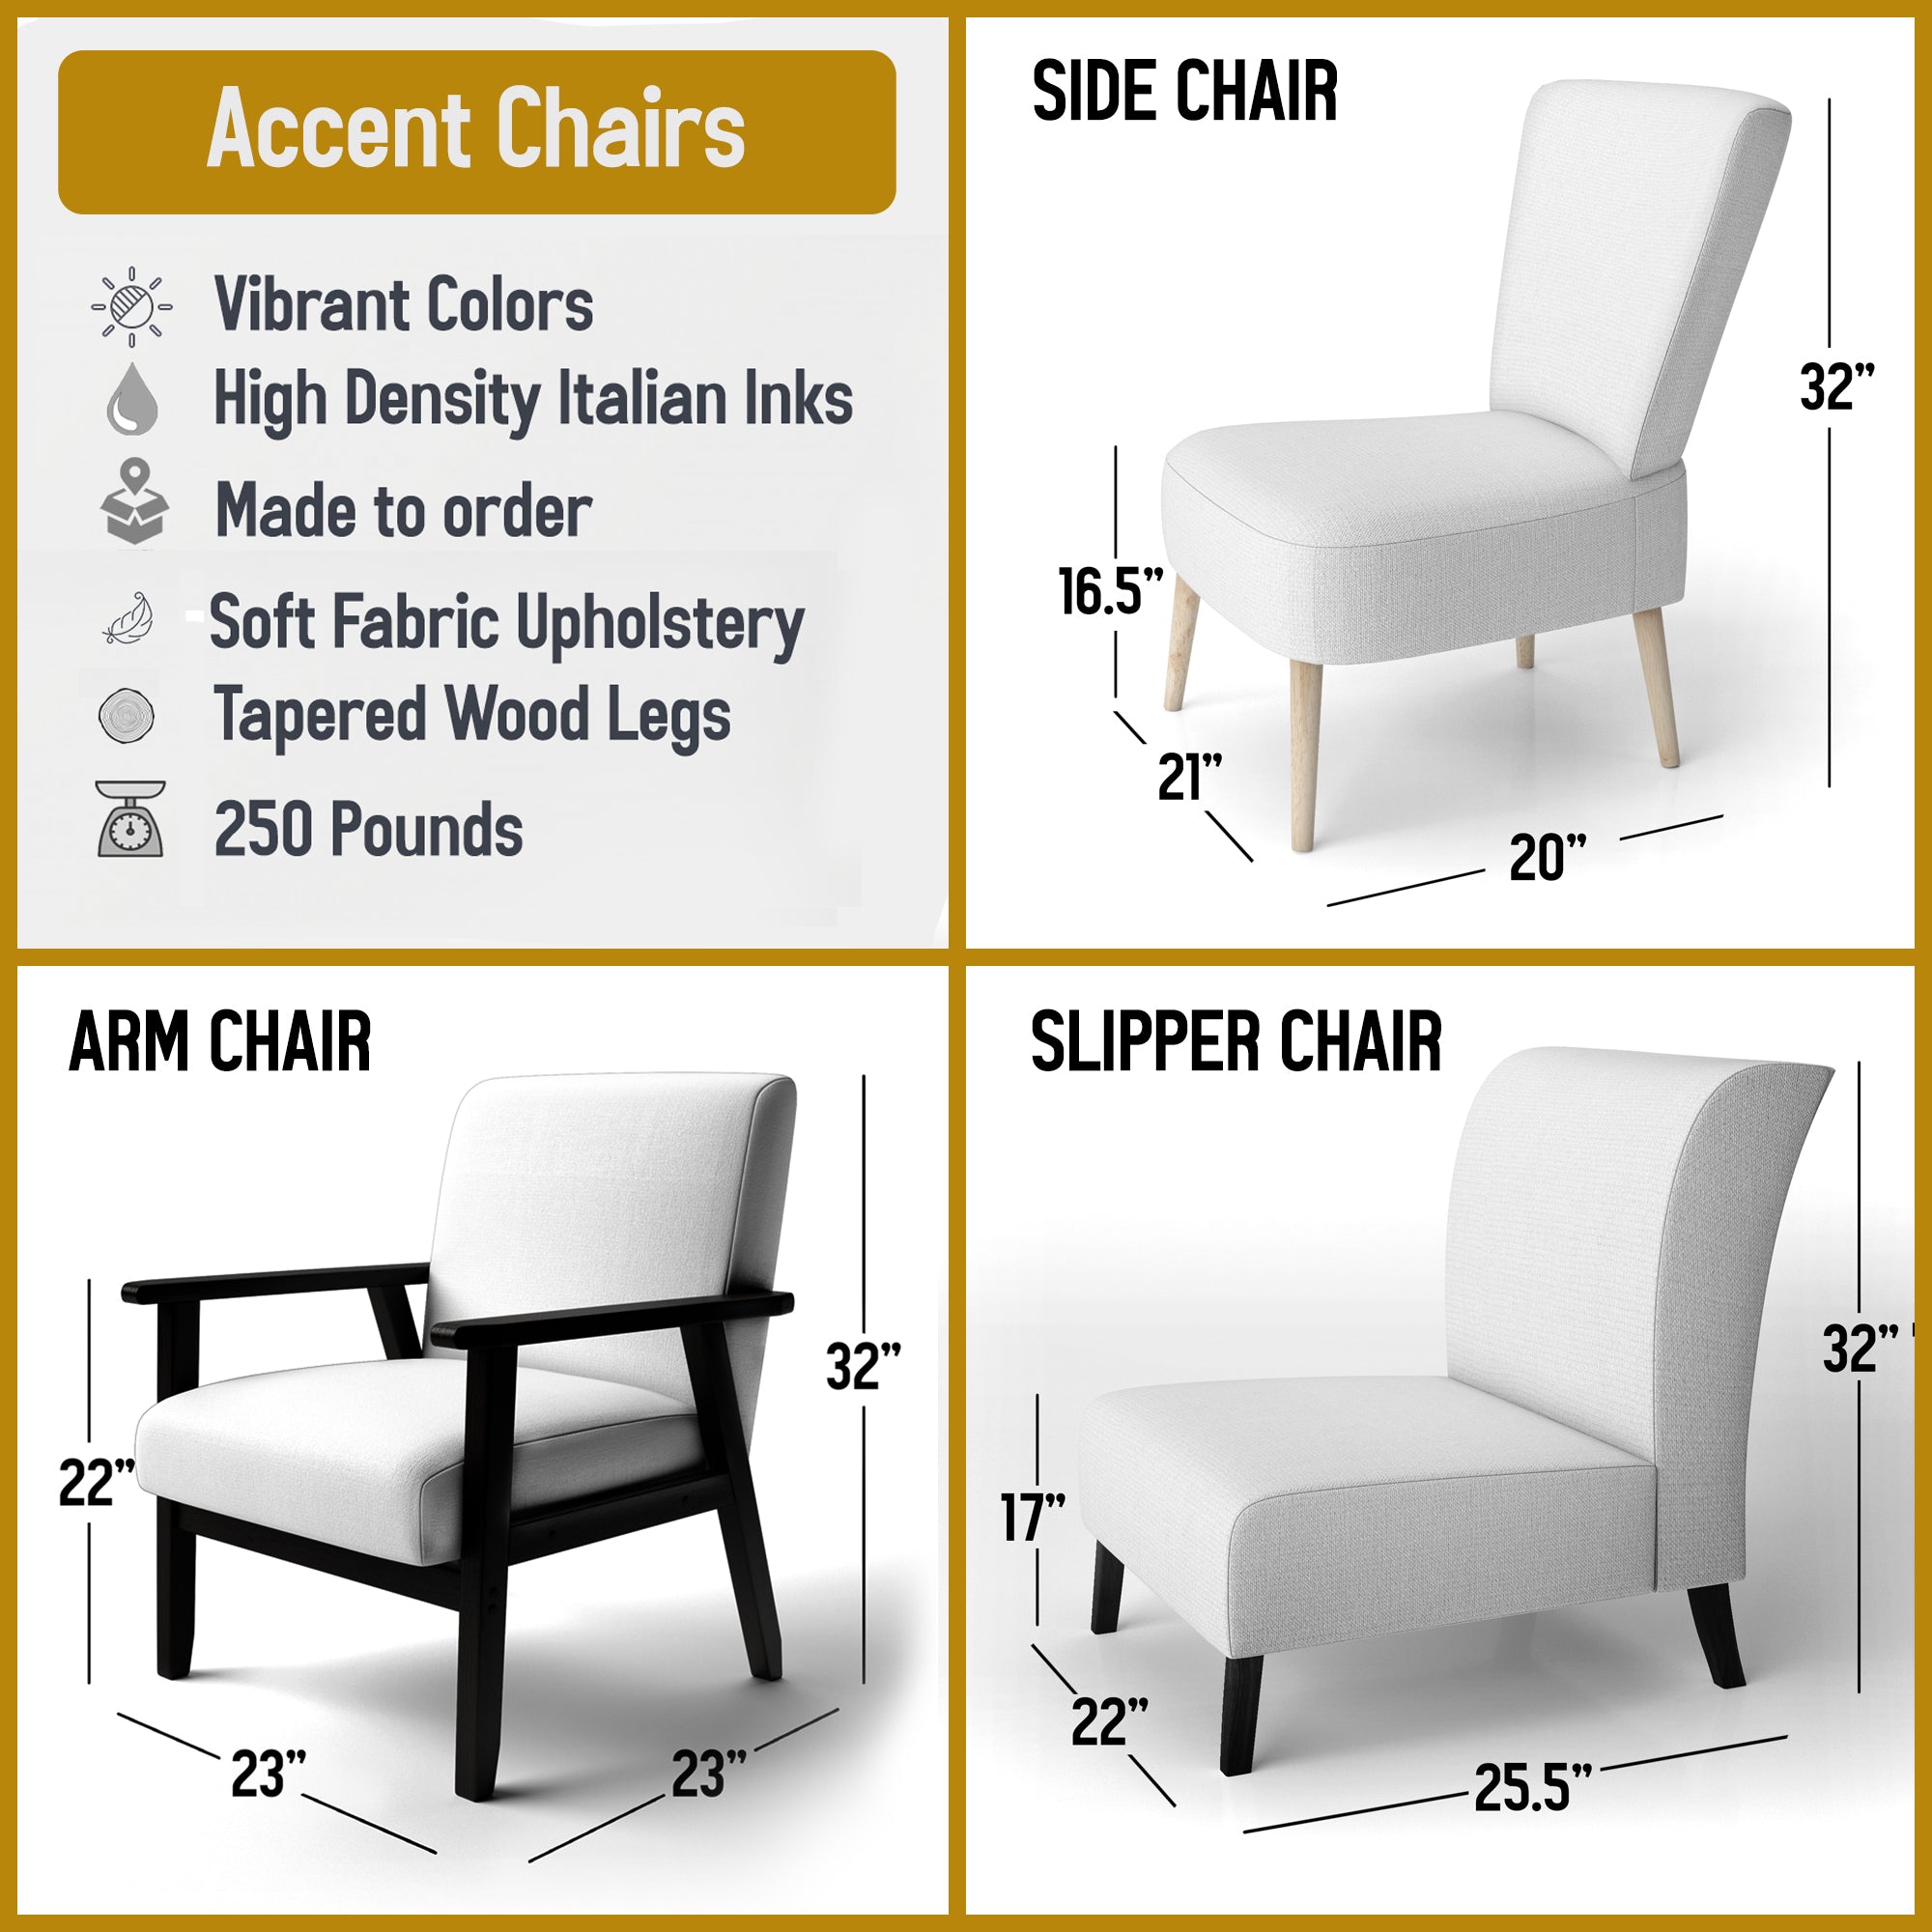 Quartz texture Tranditional Accent Chair